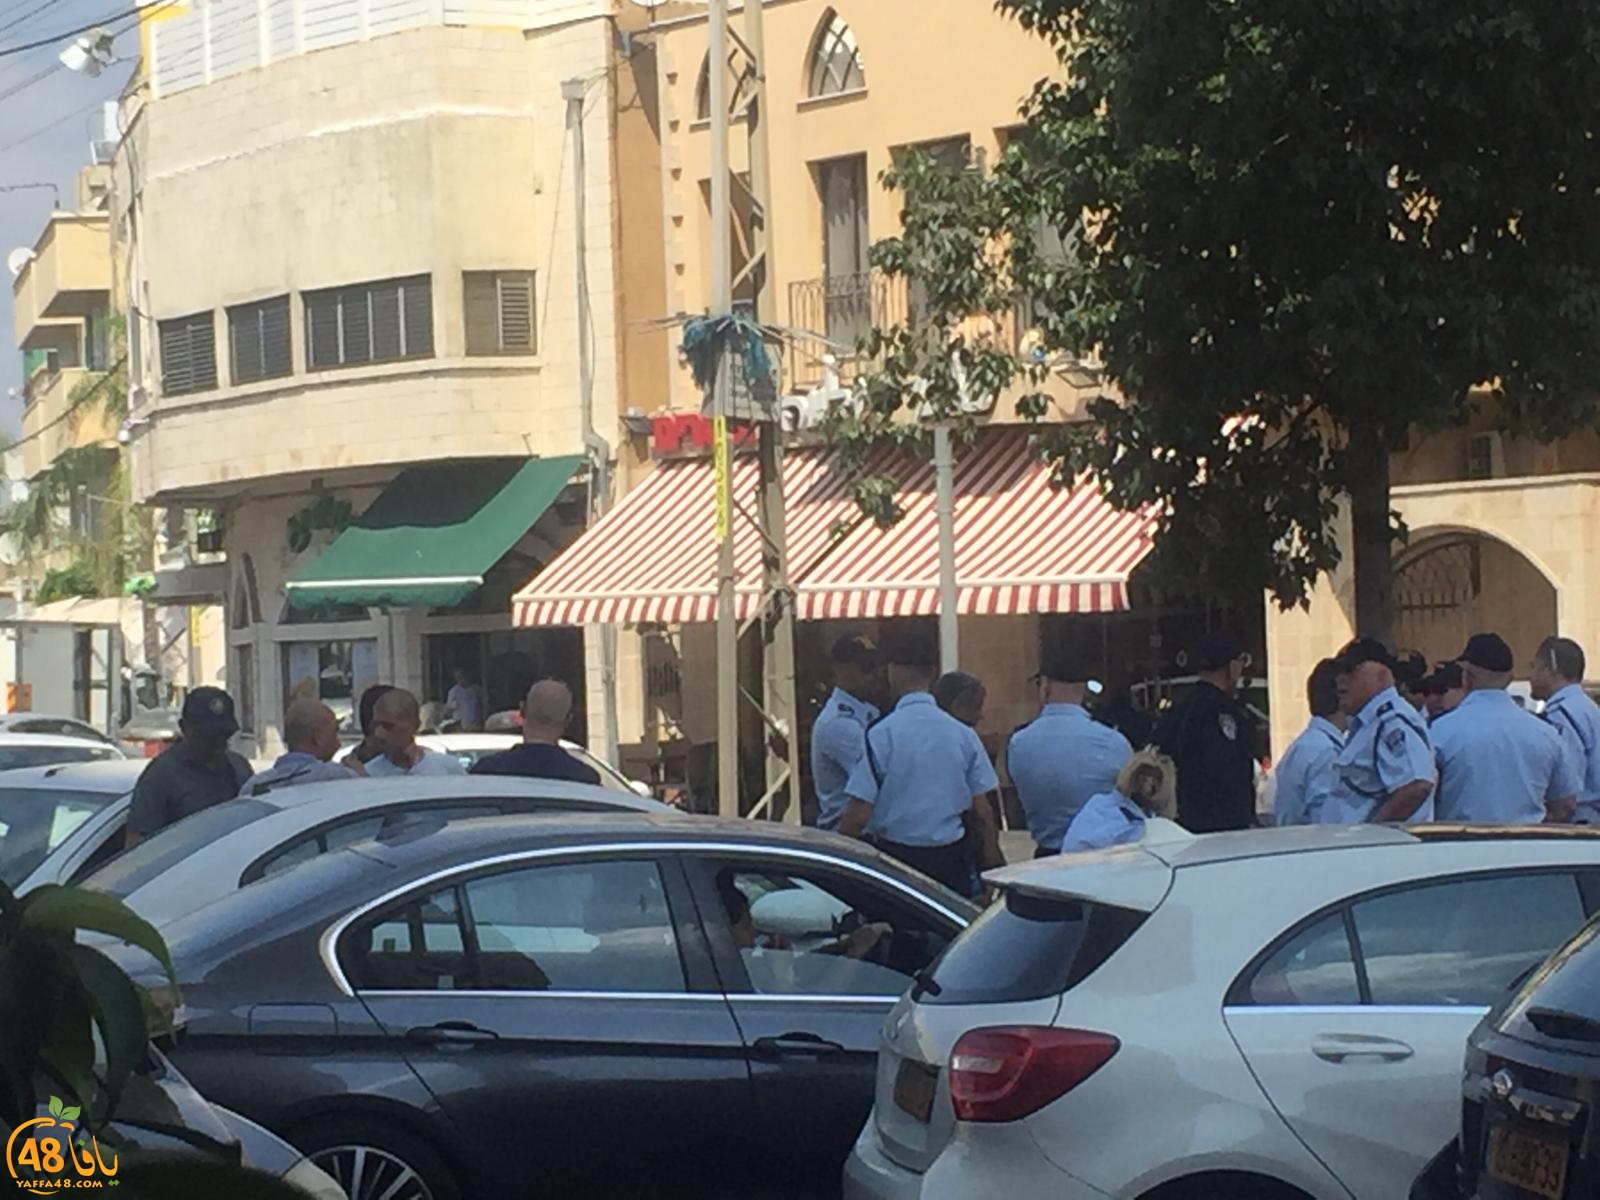  بالصور: انتشار مكثّف للشرطة في يافا عشية اقامة صلاة الجمعة في حديقة العجمي 